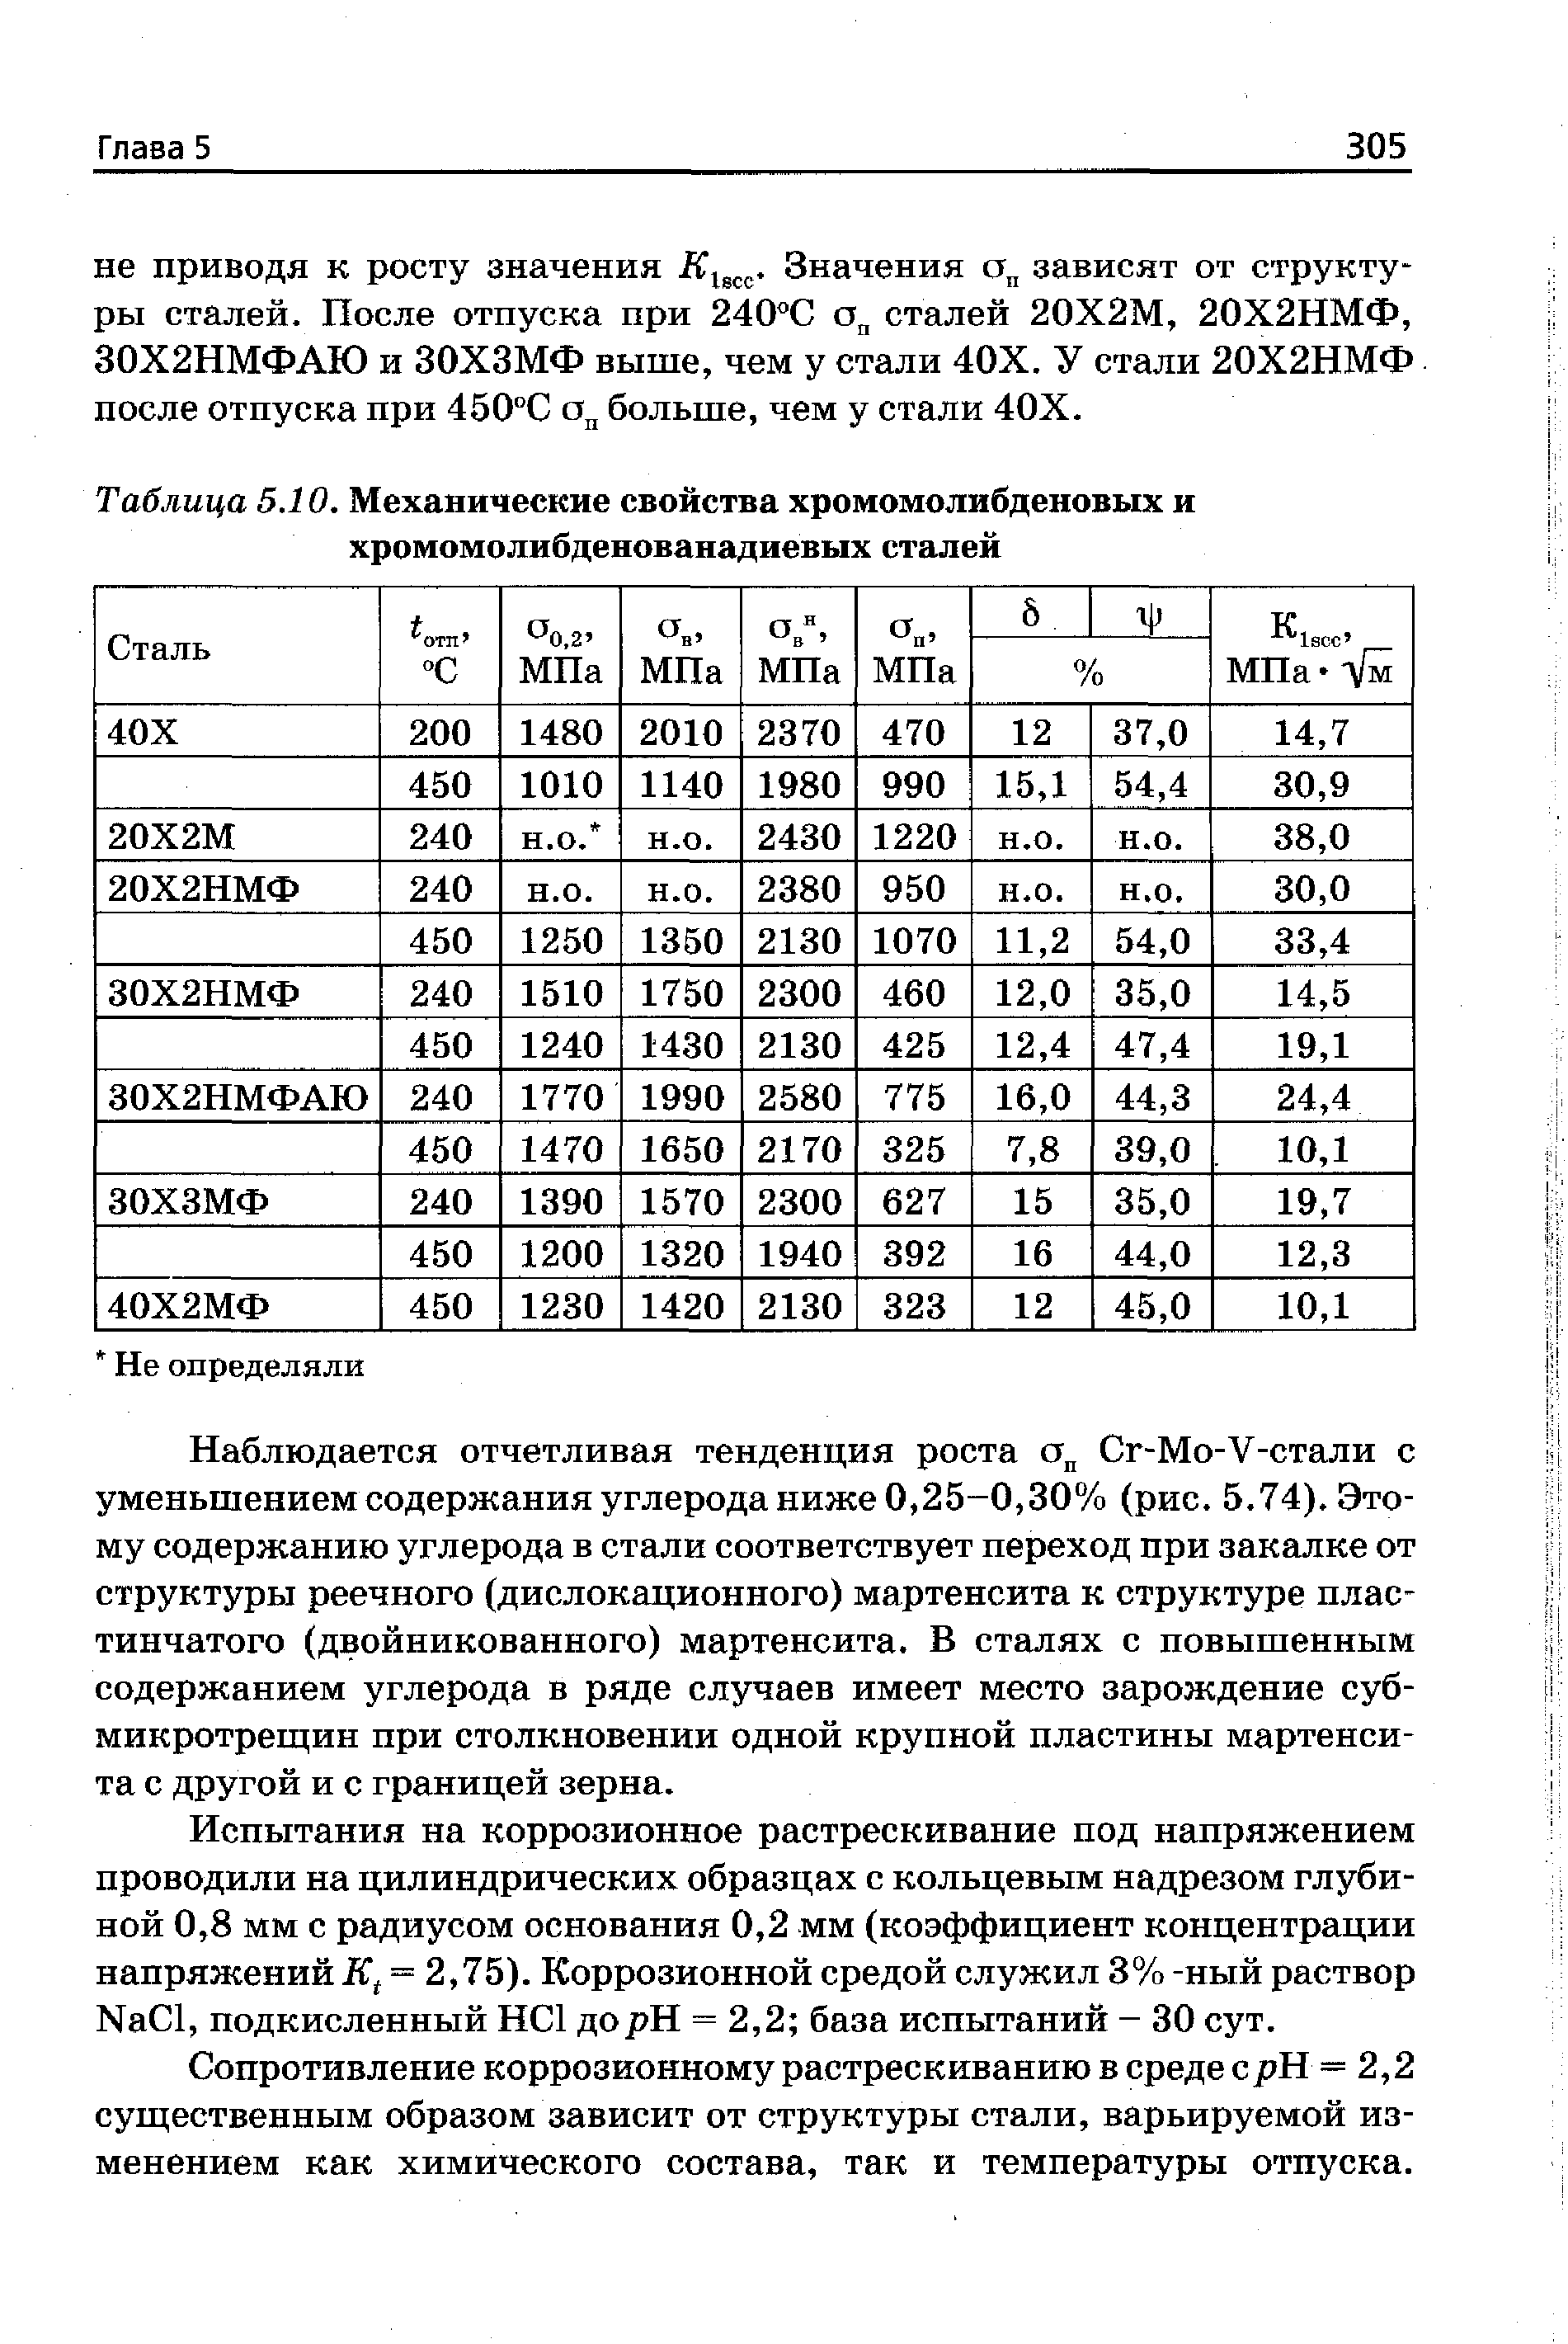 Таблица 5.10. Механические свойства хромомолибденовых и хромомолибденованадиевых сталей
